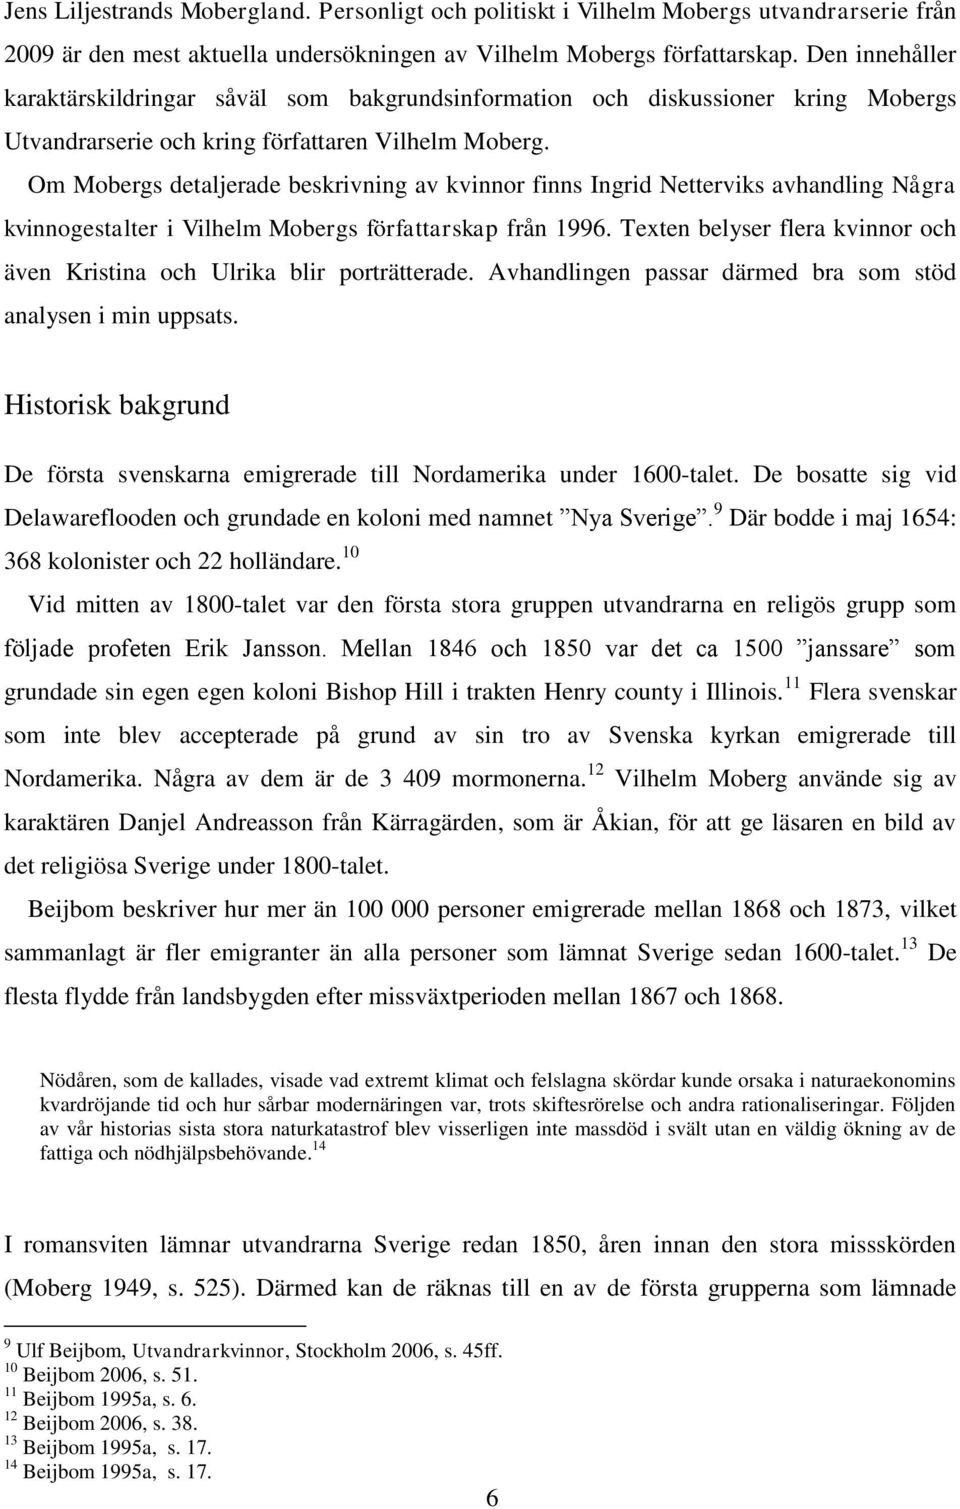 Om Mobergs detaljerade beskrivning av kvinnor finns Ingrid Netterviks avhandling Några kvinnogestalter i Vilhelm Mobergs författarskap från 1996.